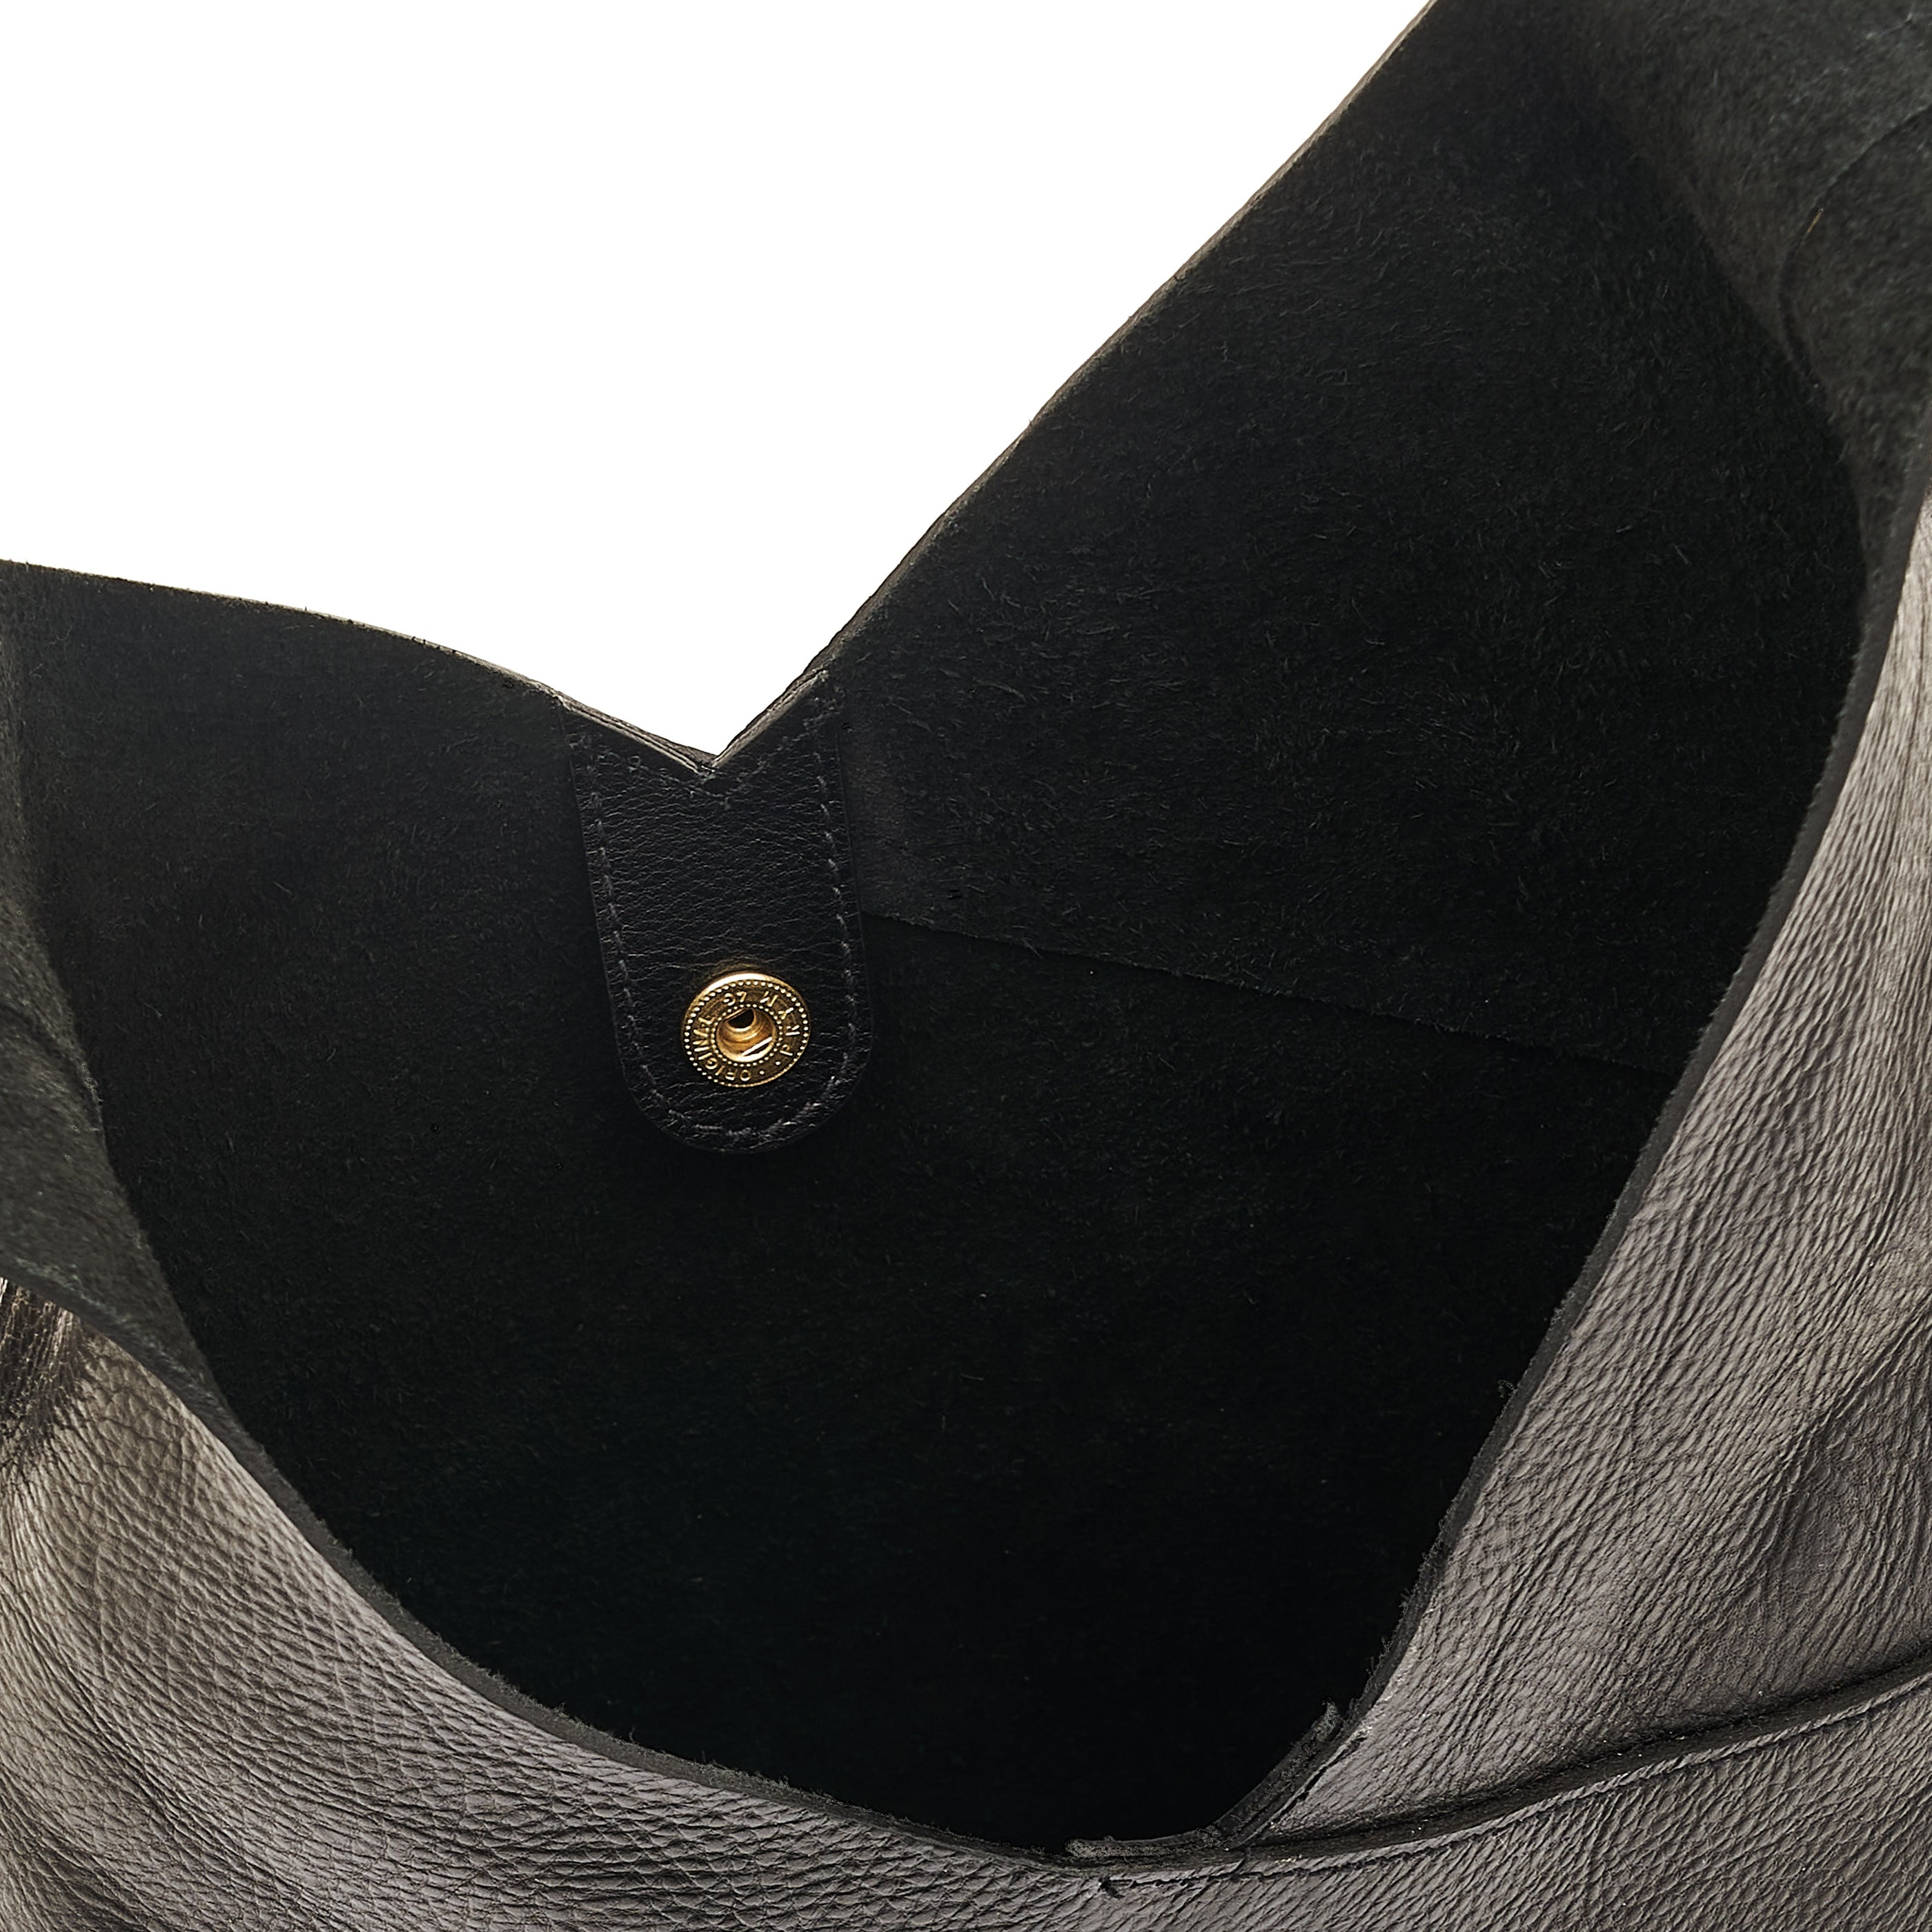 Malibu | Women's shoulder bag in leather color black